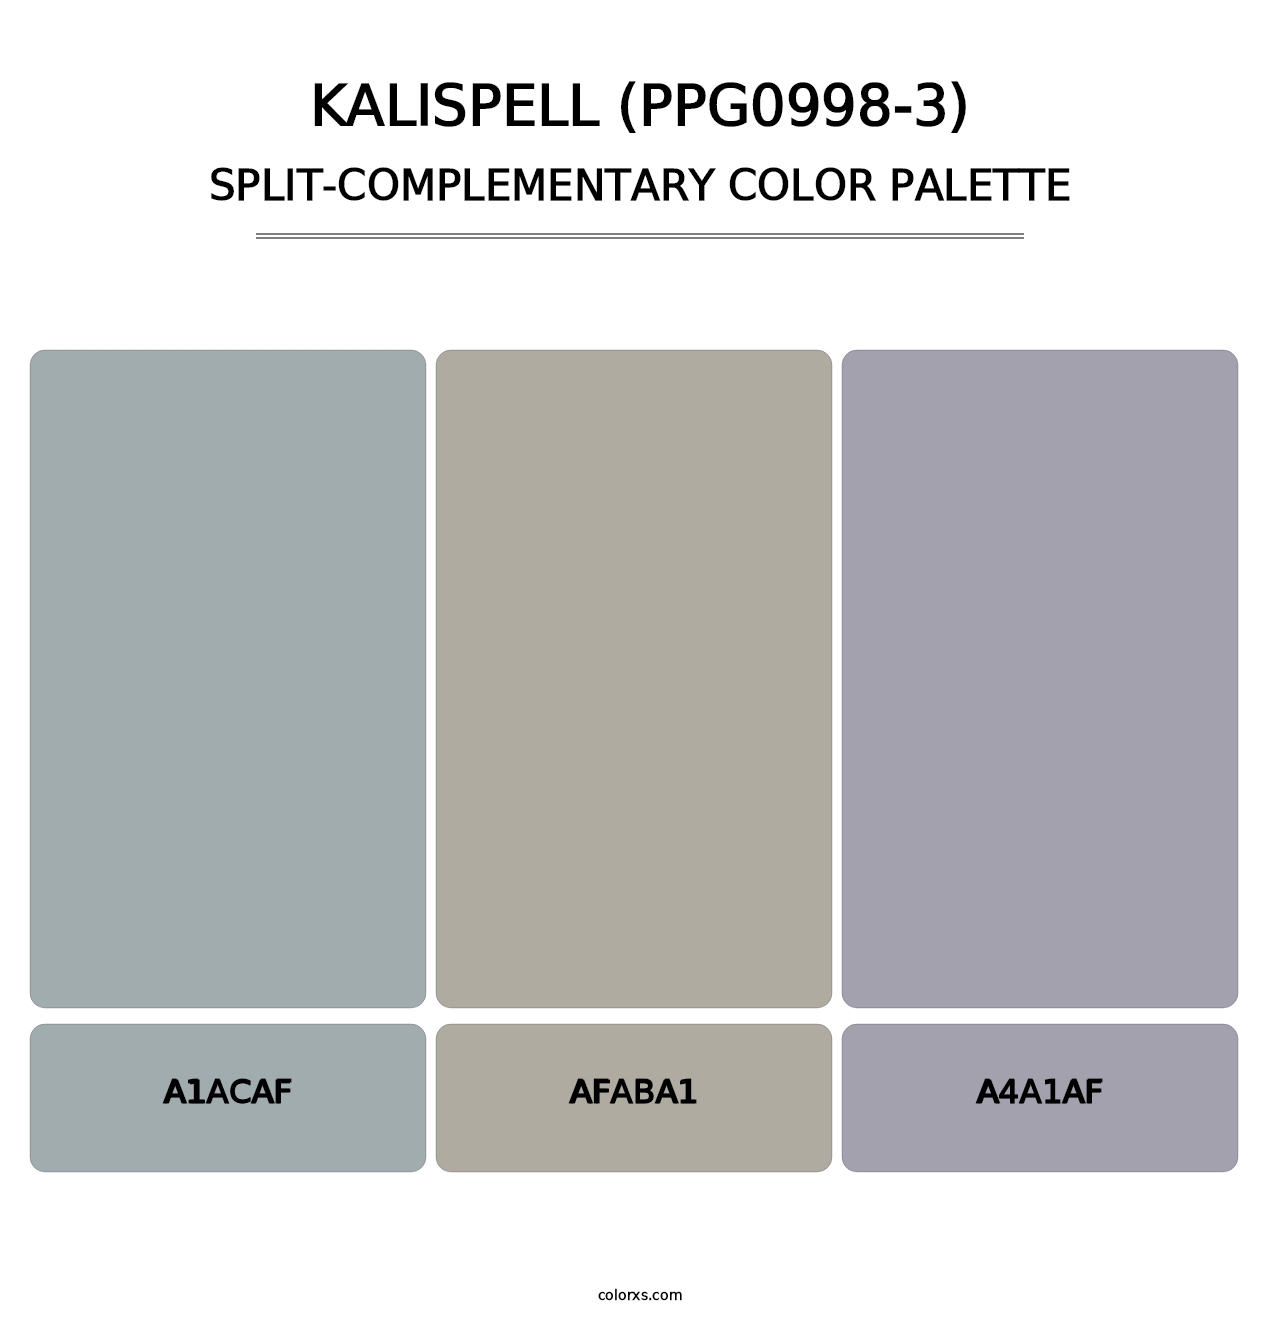 Kalispell (PPG0998-3) - Split-Complementary Color Palette